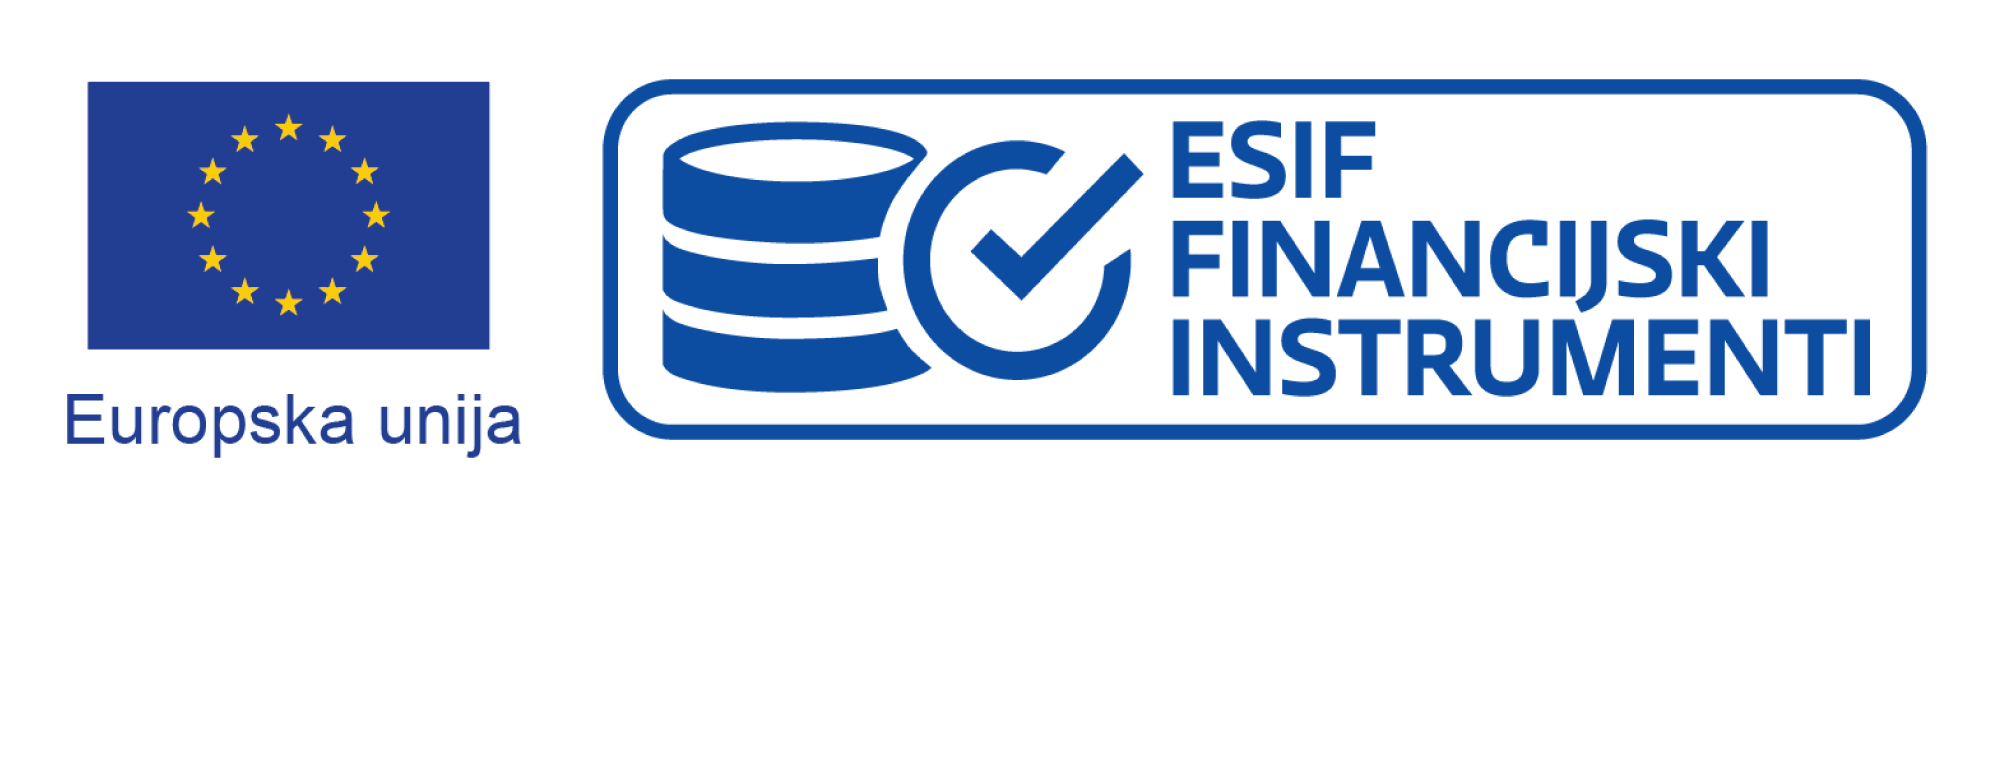 ESIF-logo